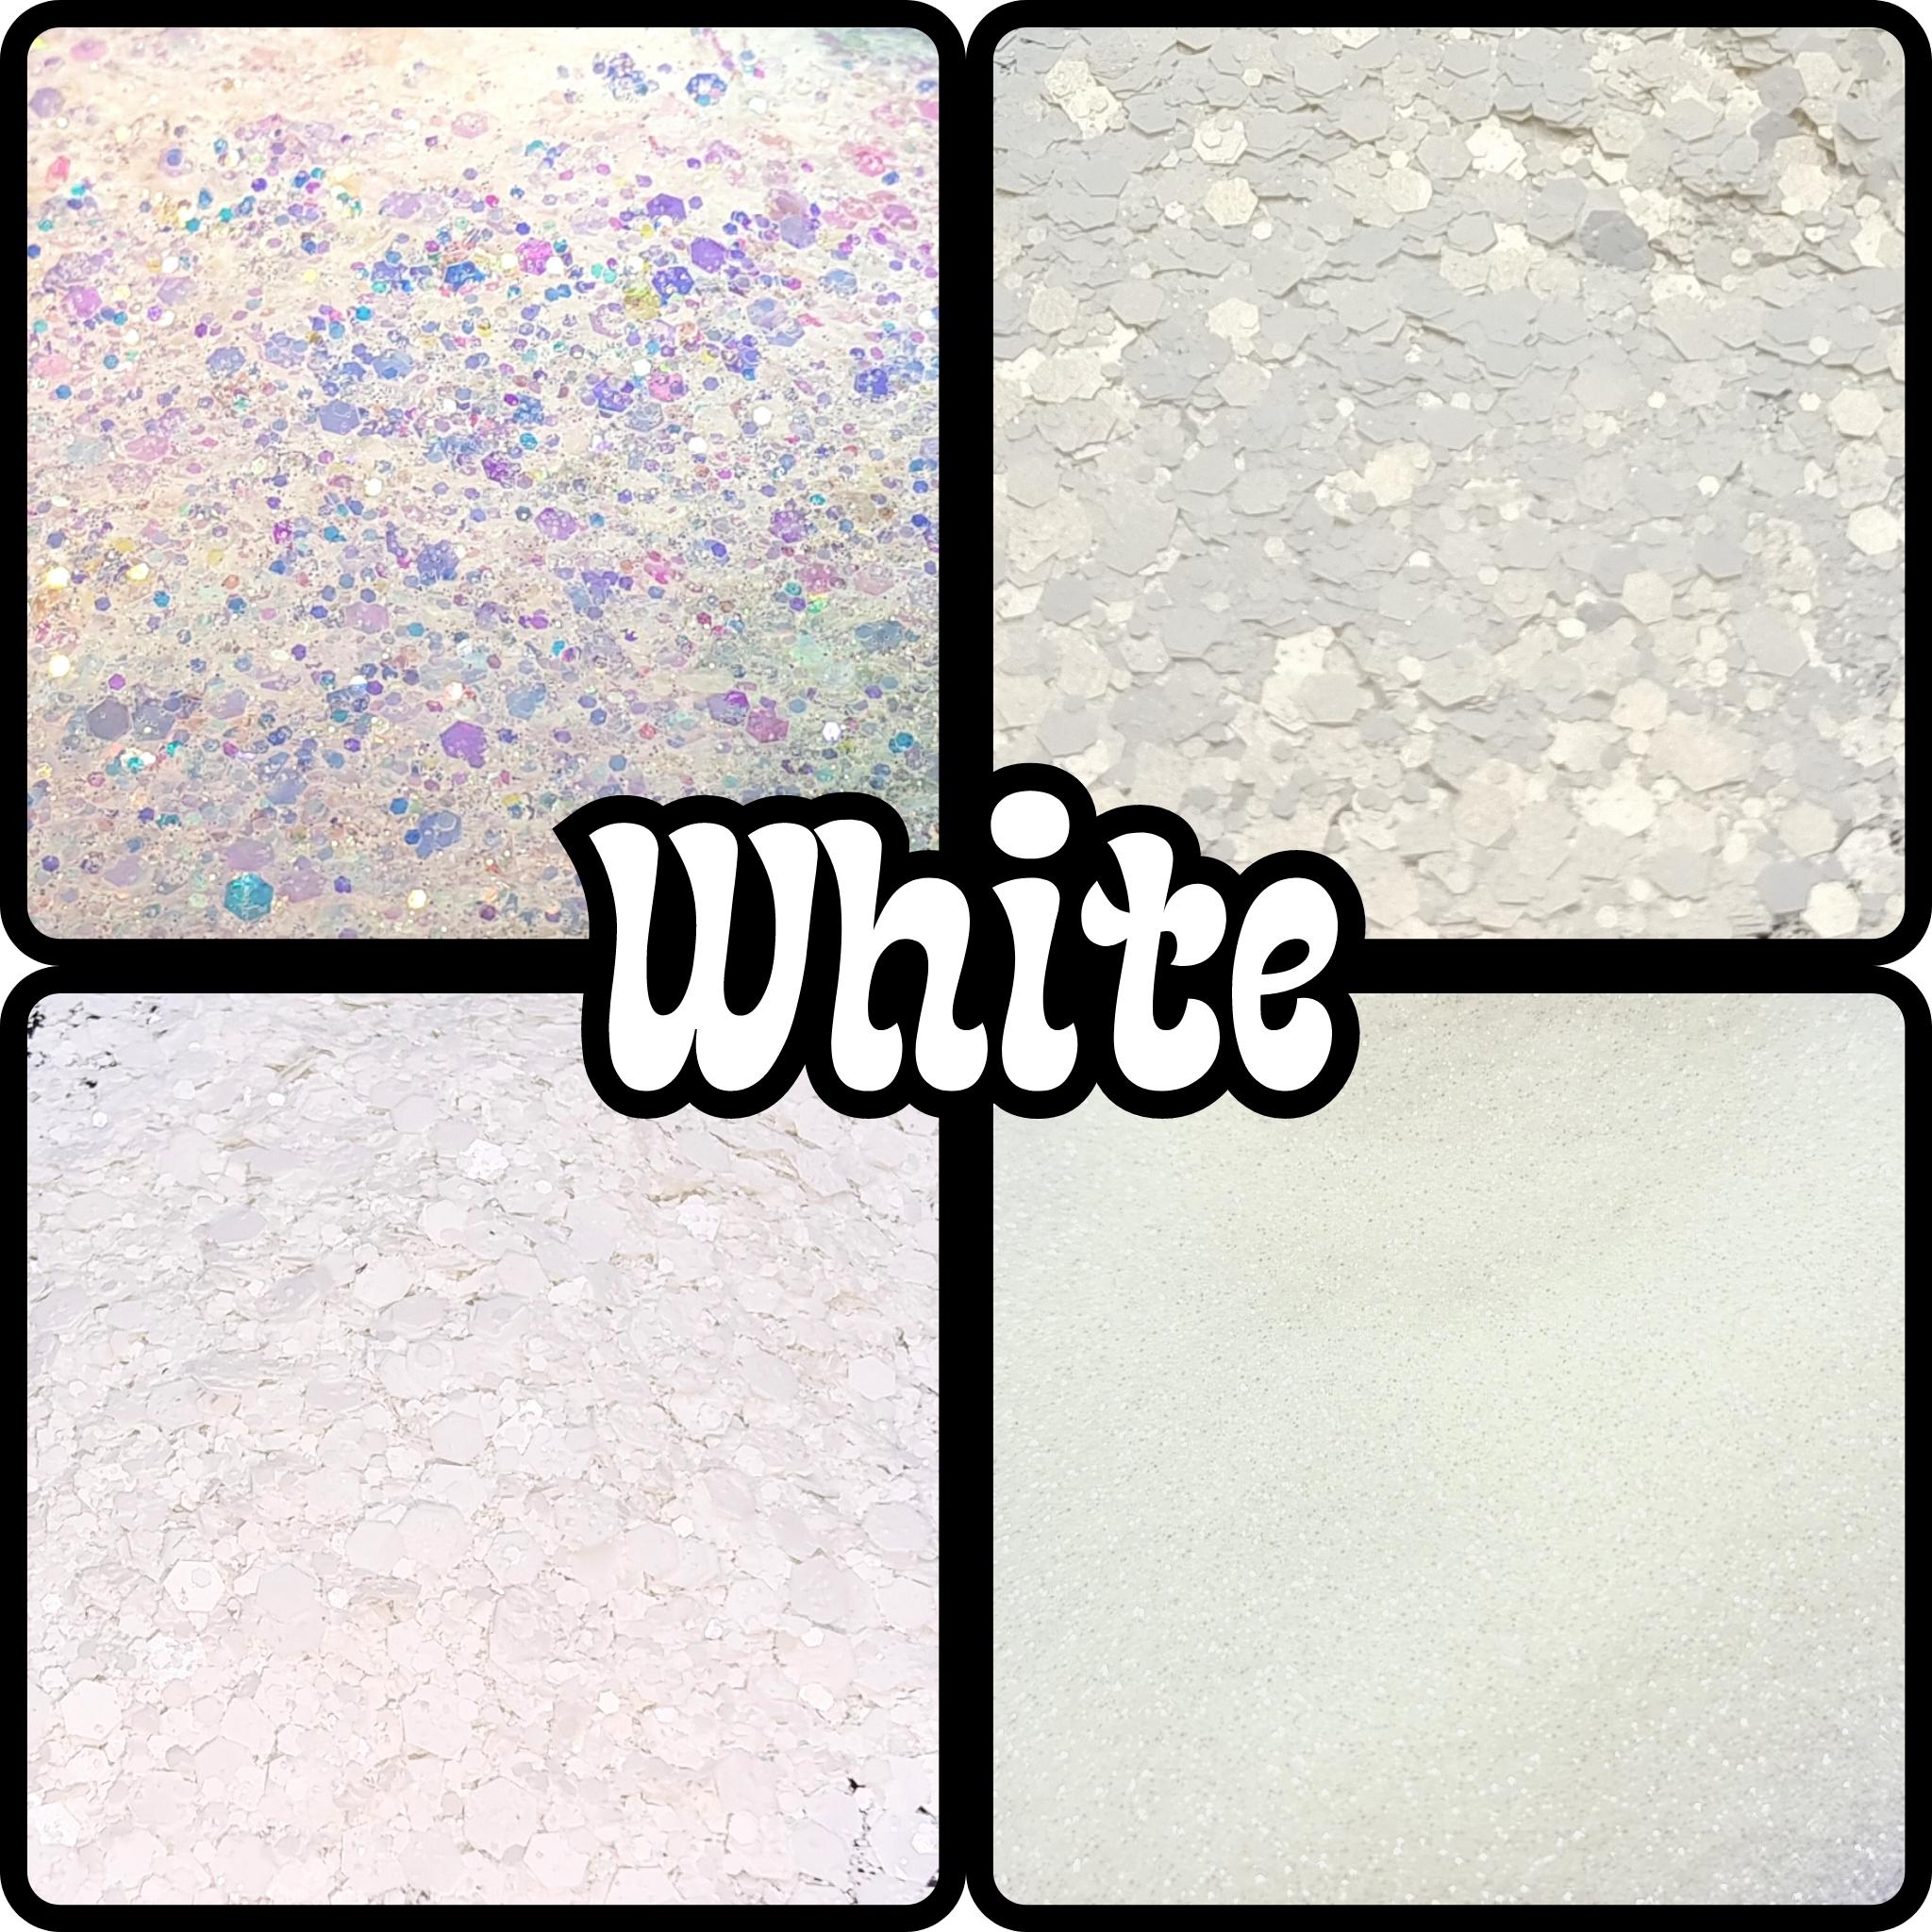 White Glitter – Mystique Glitter Co.